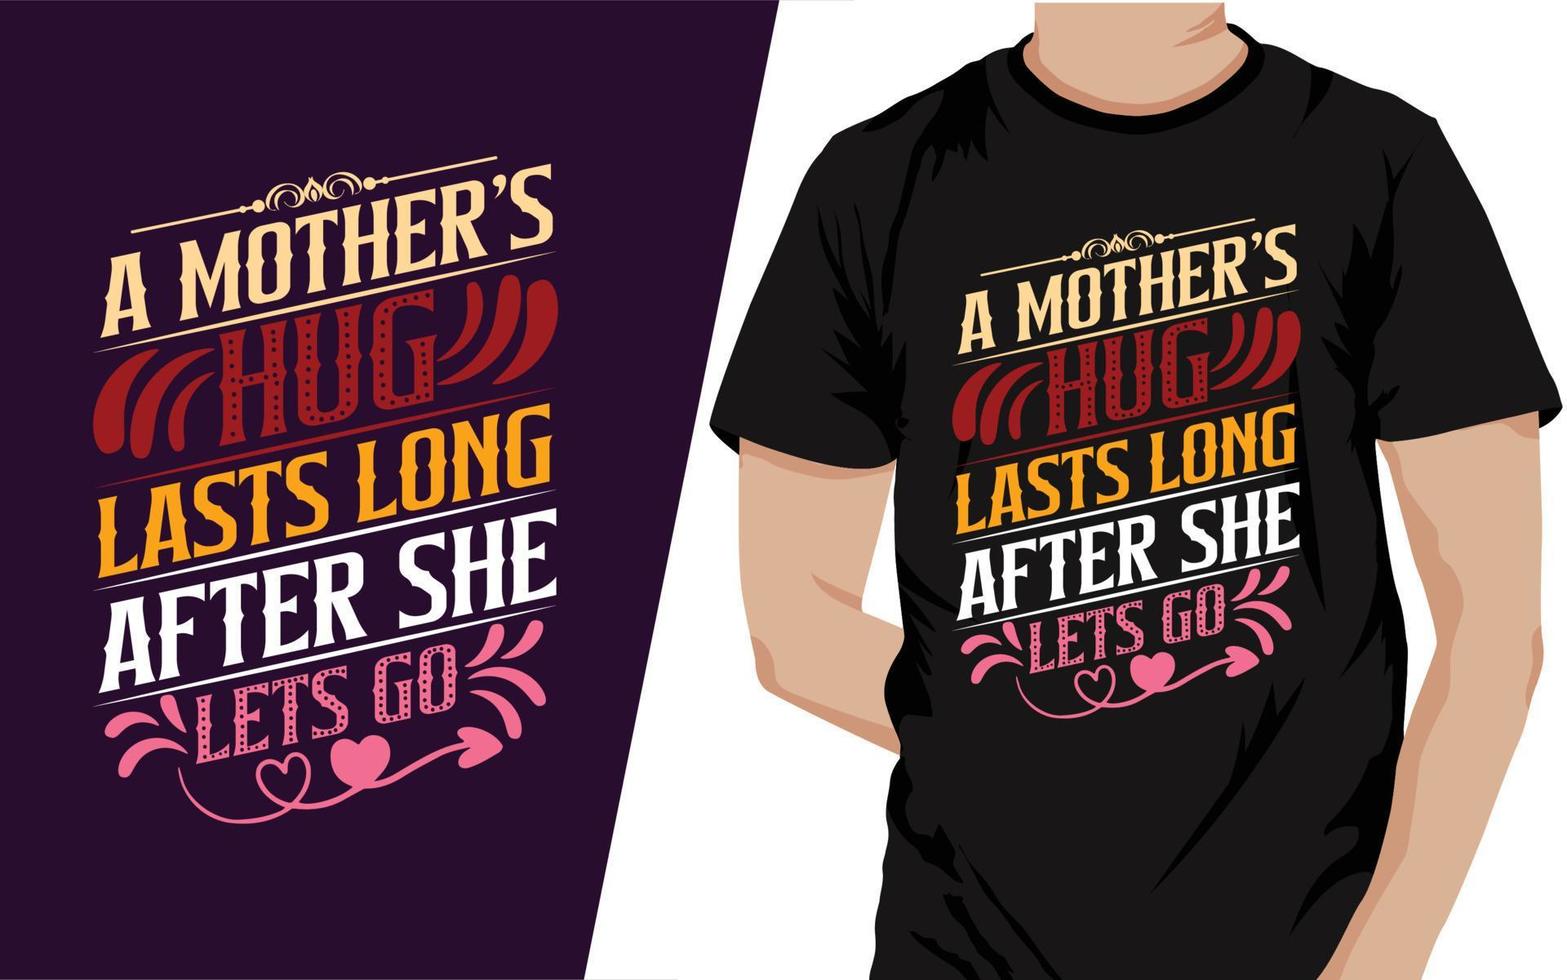 en mors kram varar lång efter hon massor gå typograpy t skjorta design vektor fil